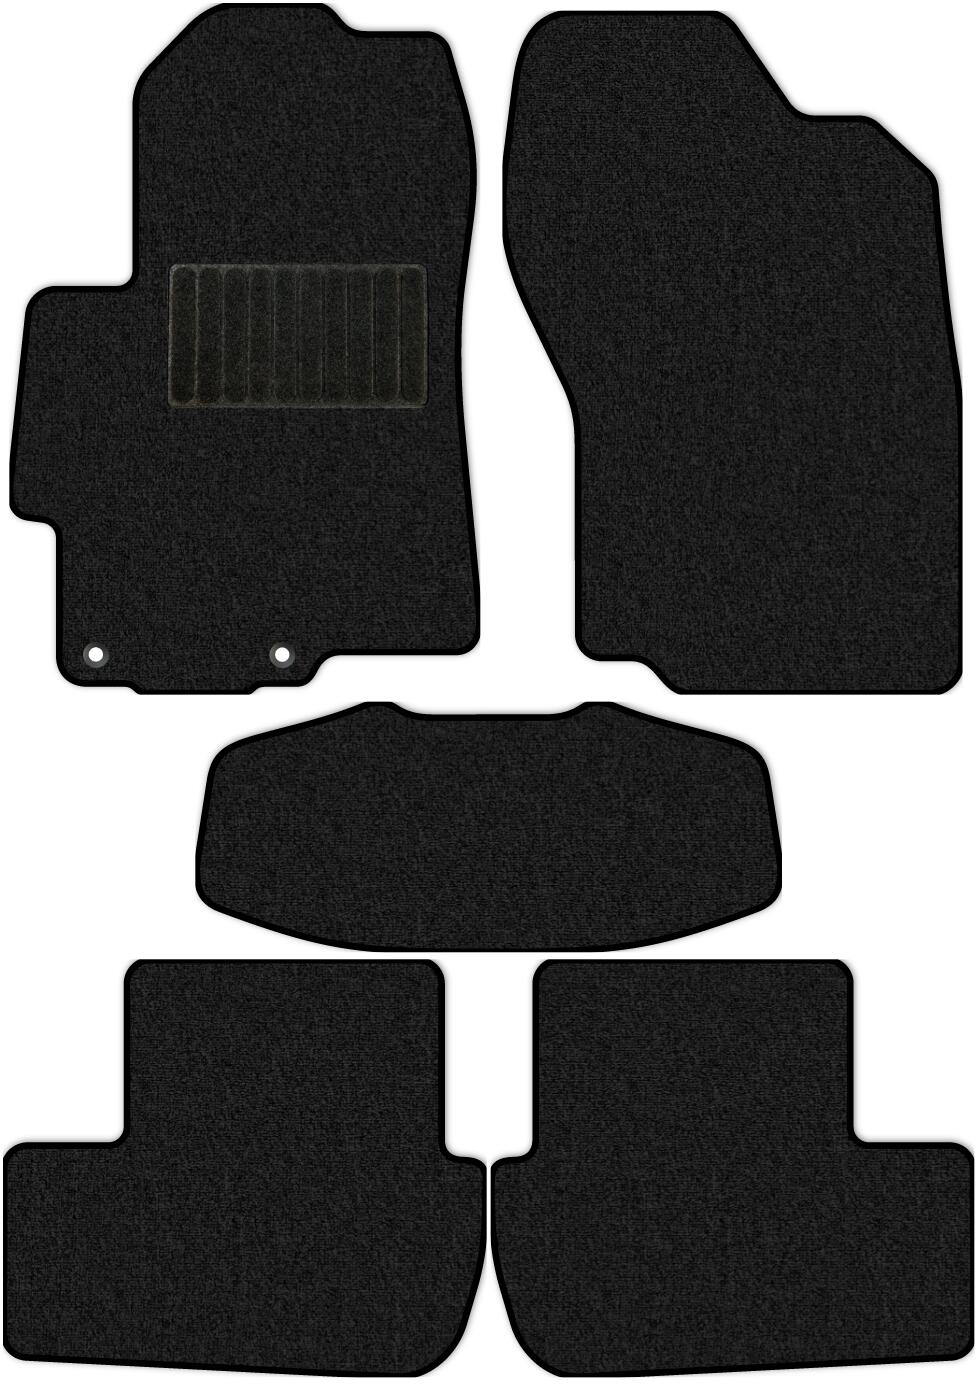 Коврики текстильные в салон Mitsubishi Lancer X (седан / CY2A, CY3A, CY4A) 2007 - 2011